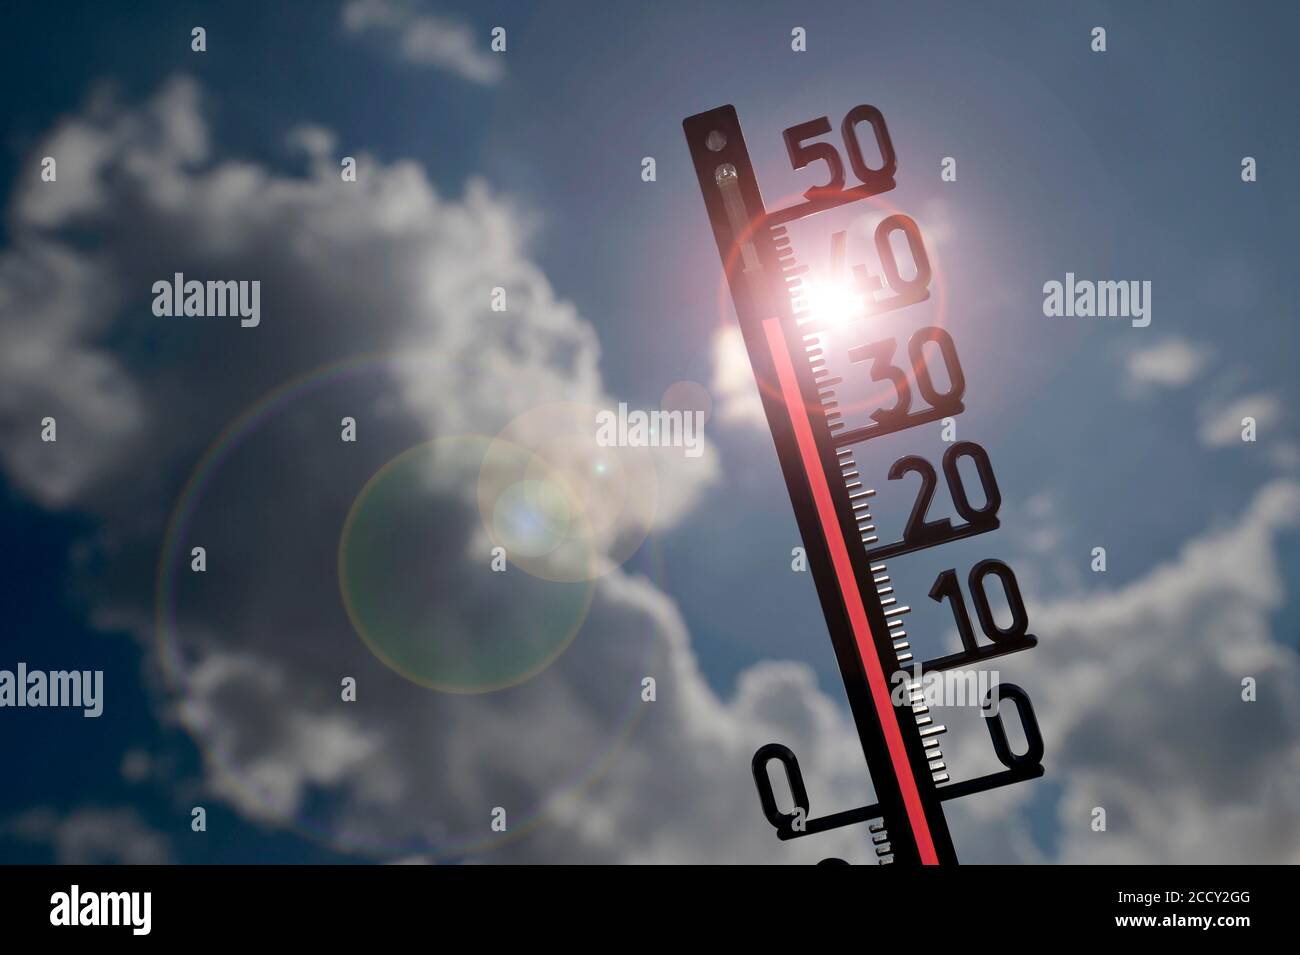 Immagine simbolo onda di calore, termometro al sole, 41 gradi Celsius, Baden-Wuerttemberg, Germania Foto Stock